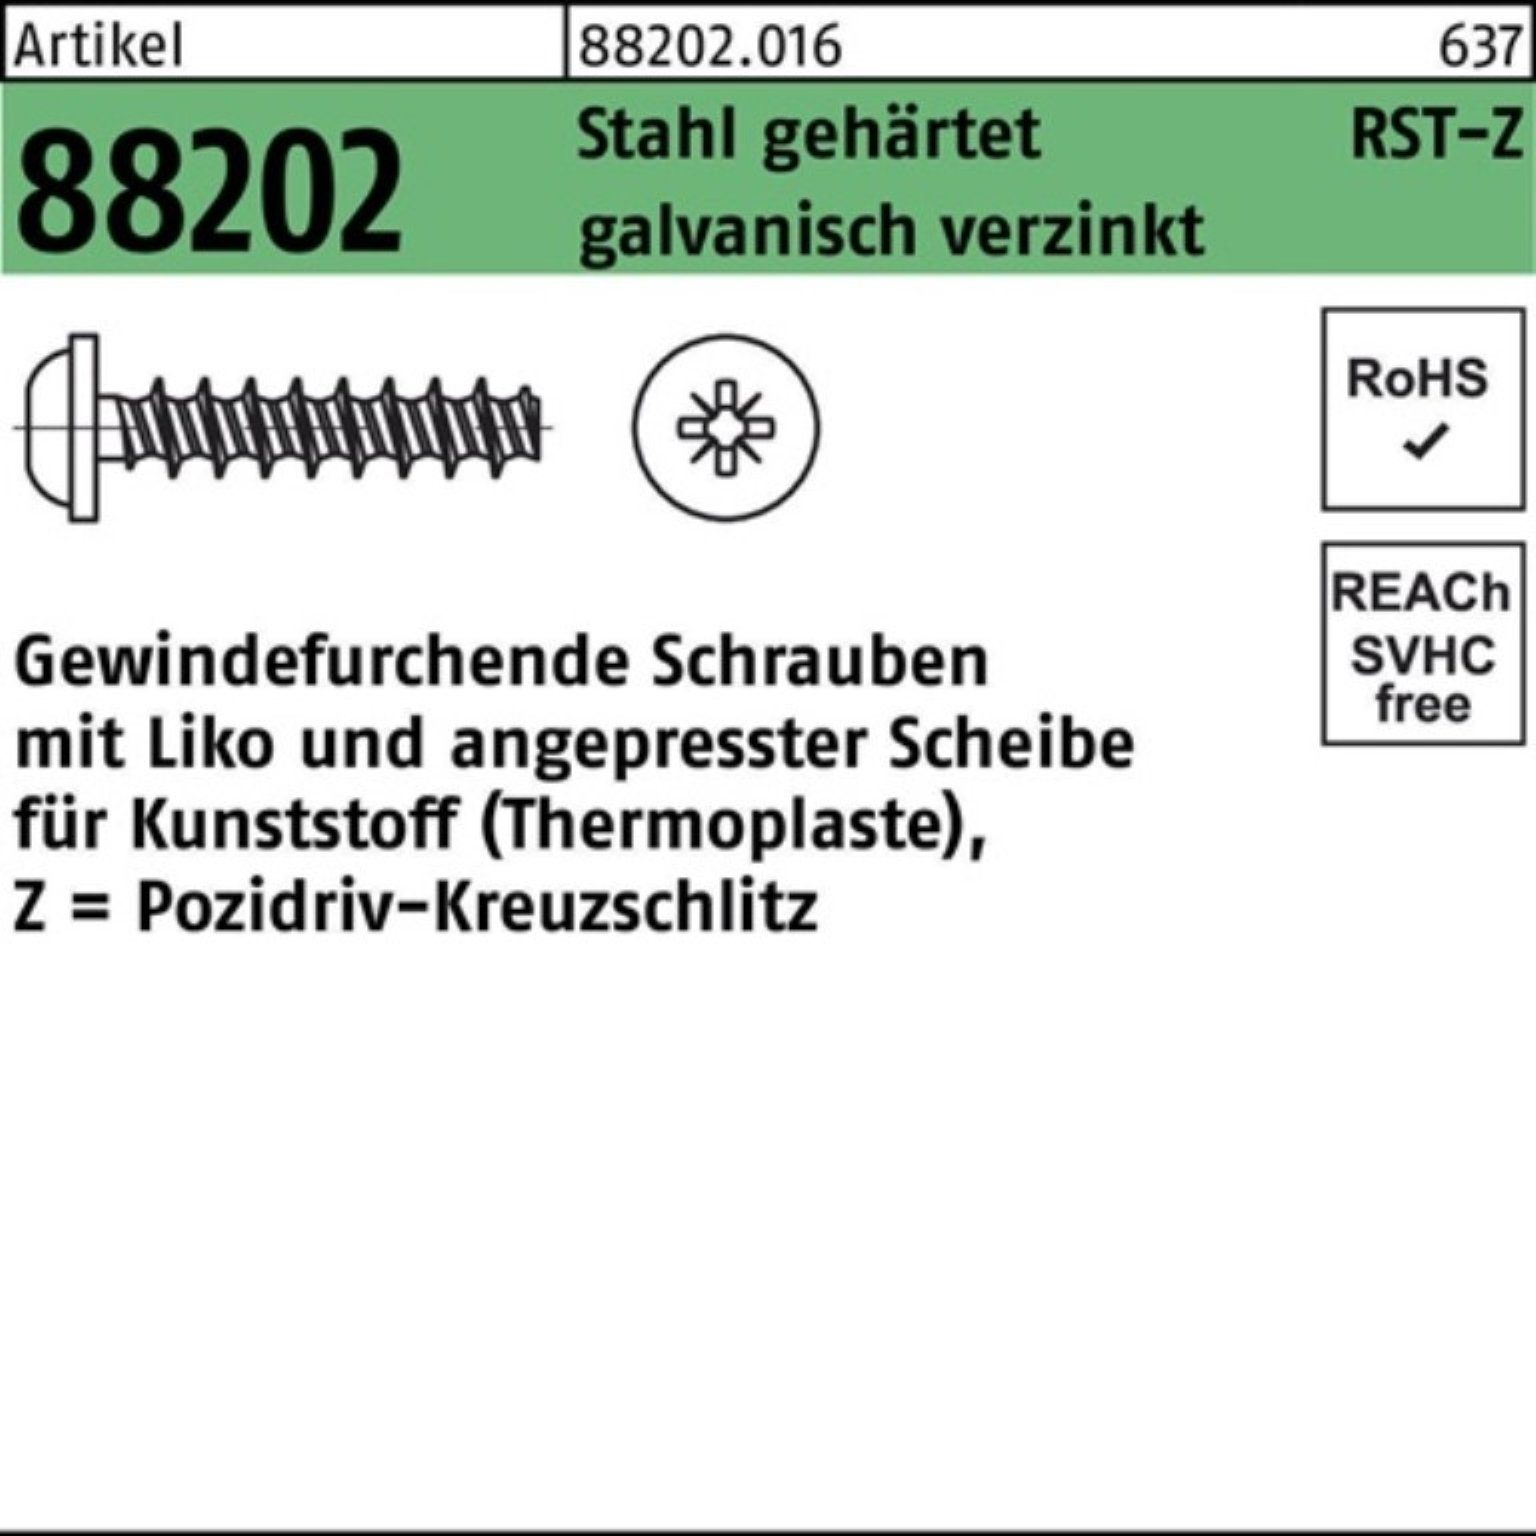 88202 Reyher PZ Liko R geh Gewindeschraube Pack Gewindefurchendeschraube 1000er Stahl 2,2x8-Z